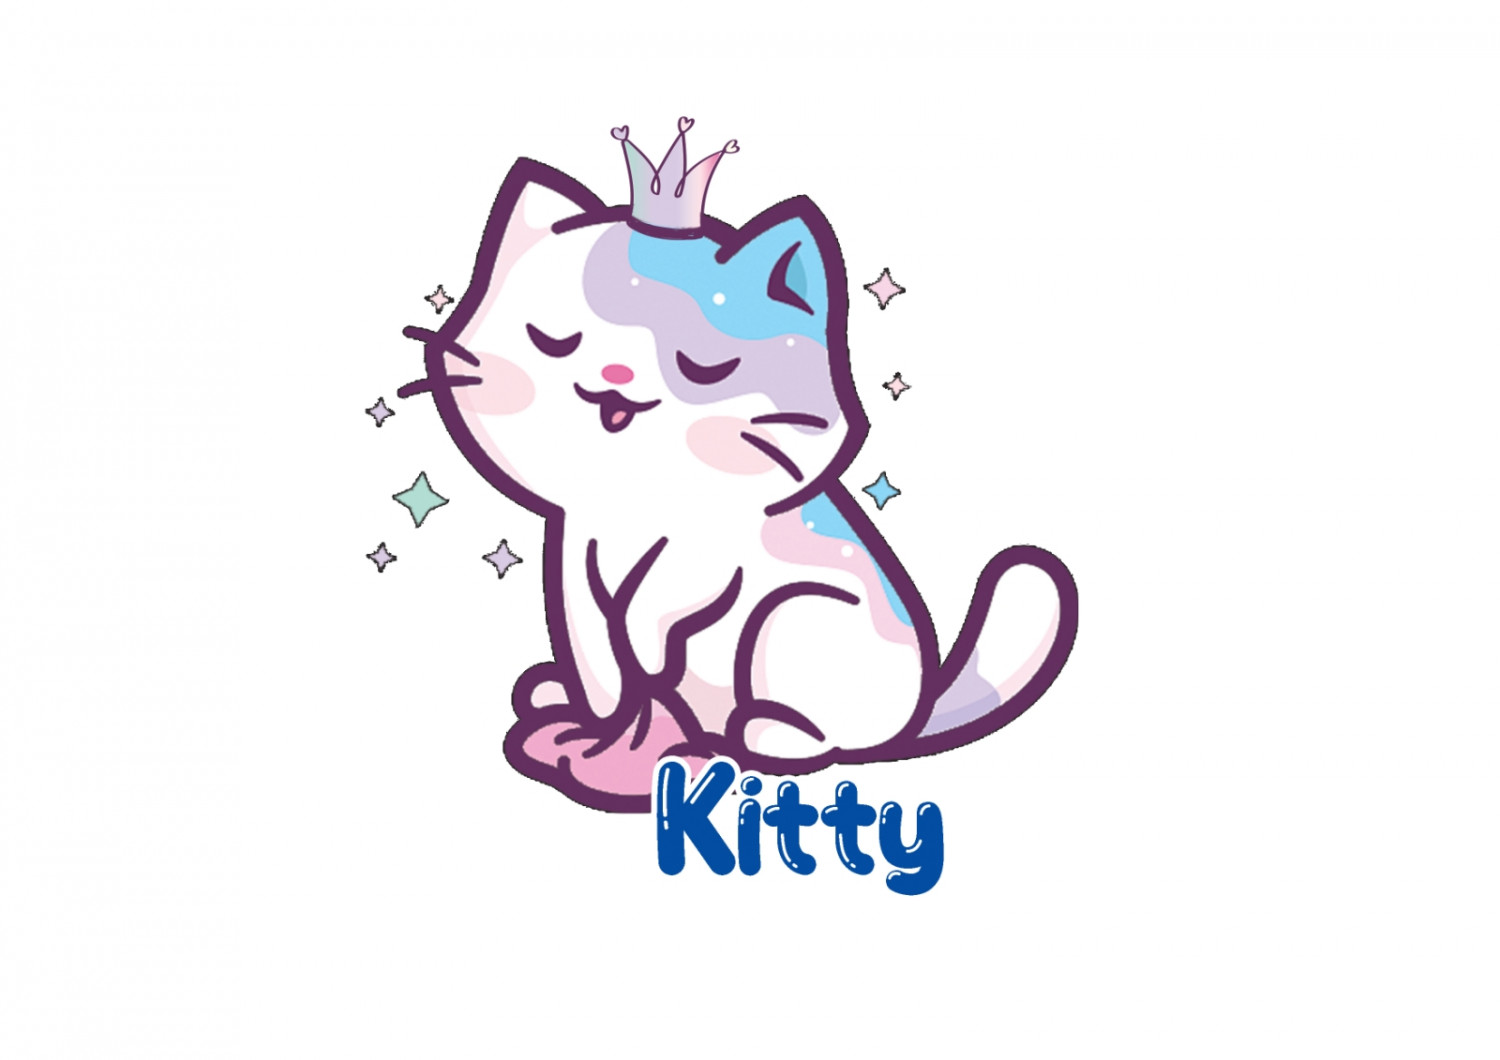 Kitty Slime Kit